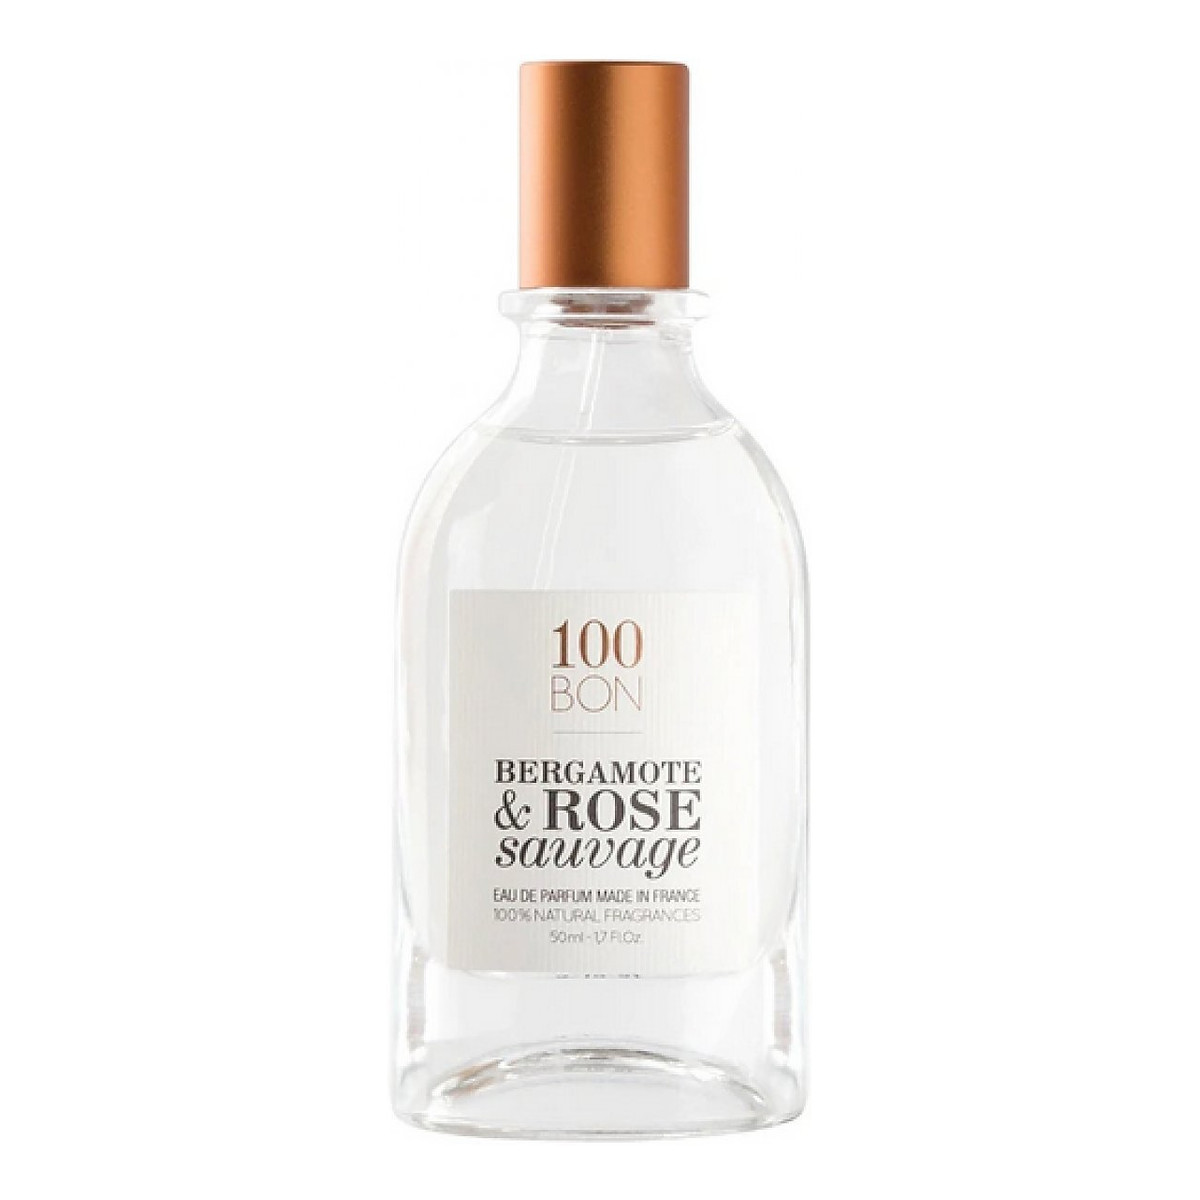 100 BON Bergamote & Rose Sauvage Woda perfumowana spray tester 50ml